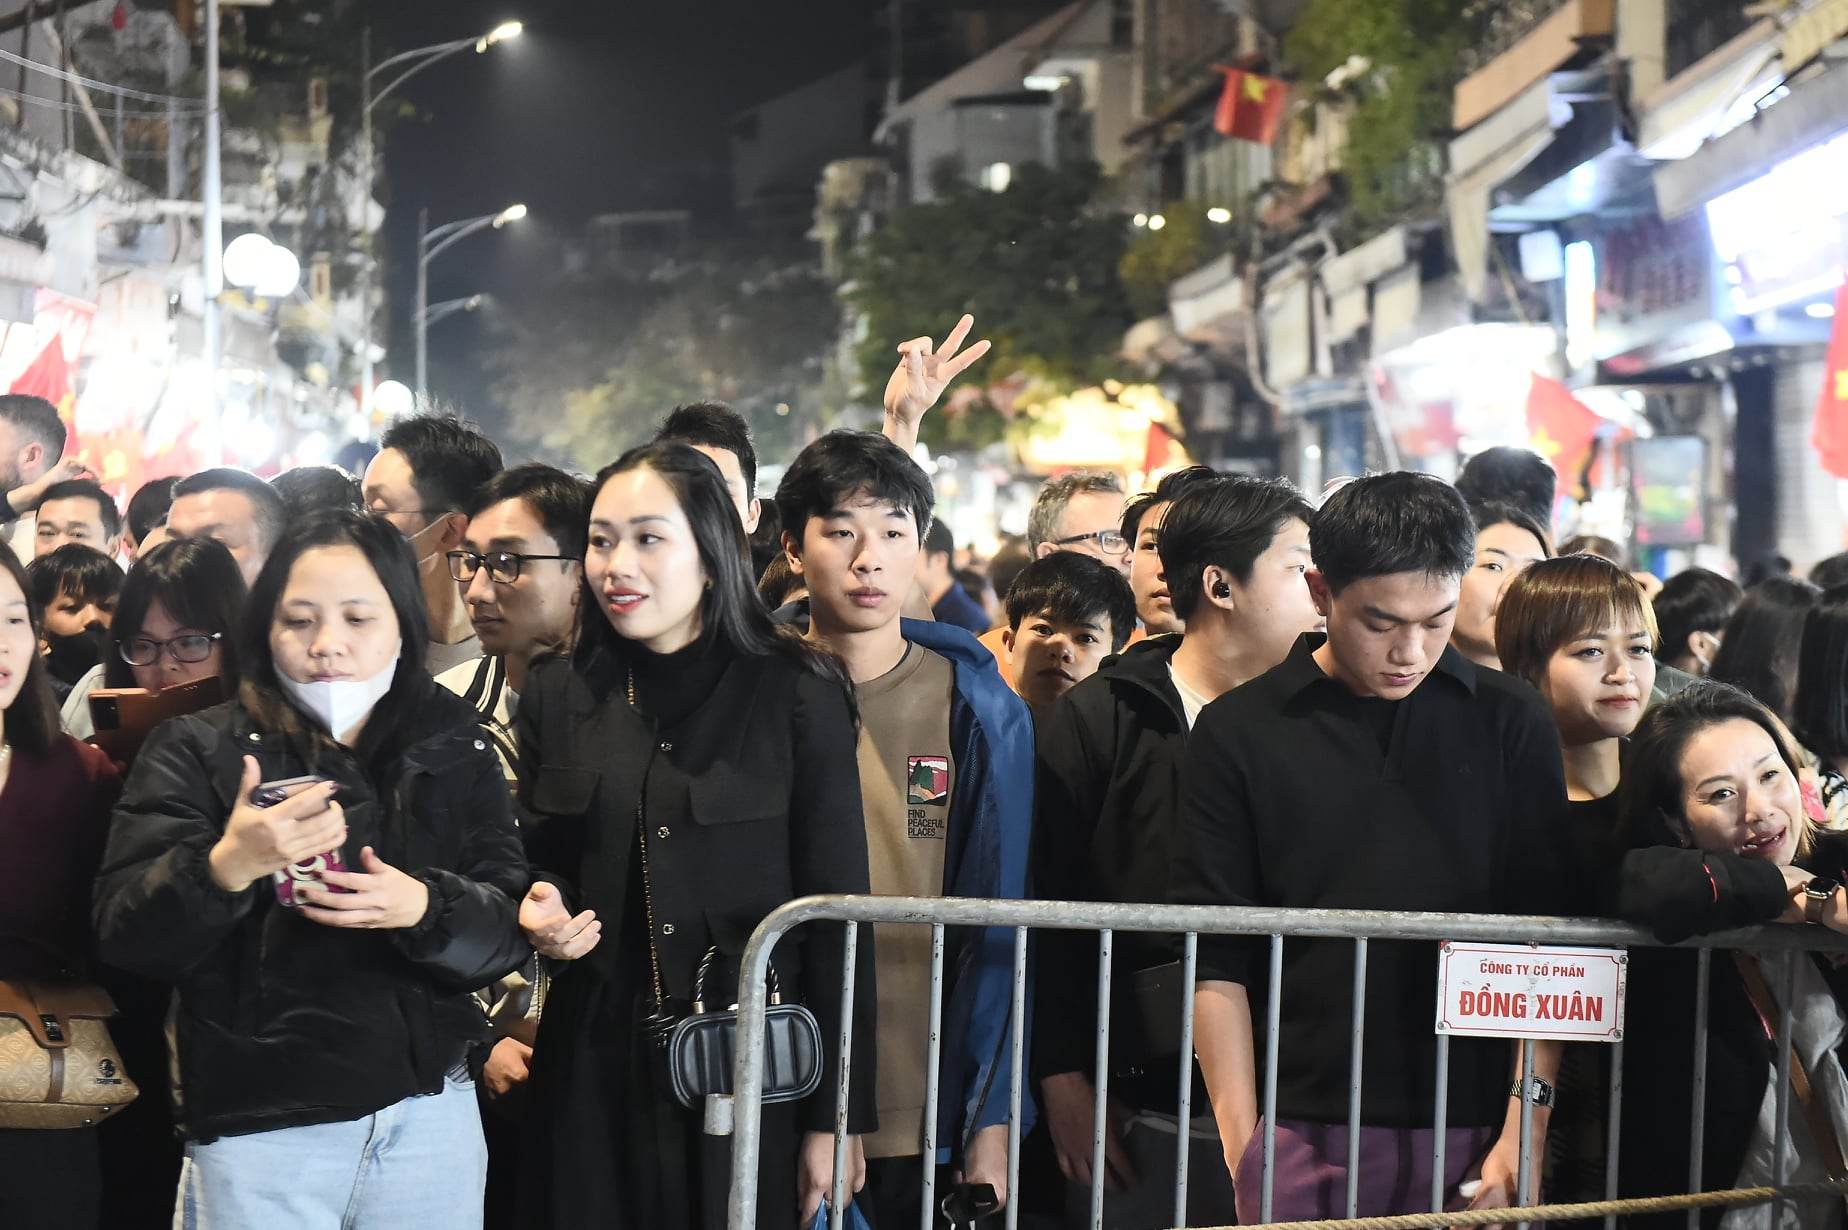 Hình ảnh nhìn đã thấy ngộp thở: Hàng nghìn người nhích từng chút ở phố đi bộ Hà Nội chờ giao thừa- Ảnh 3.